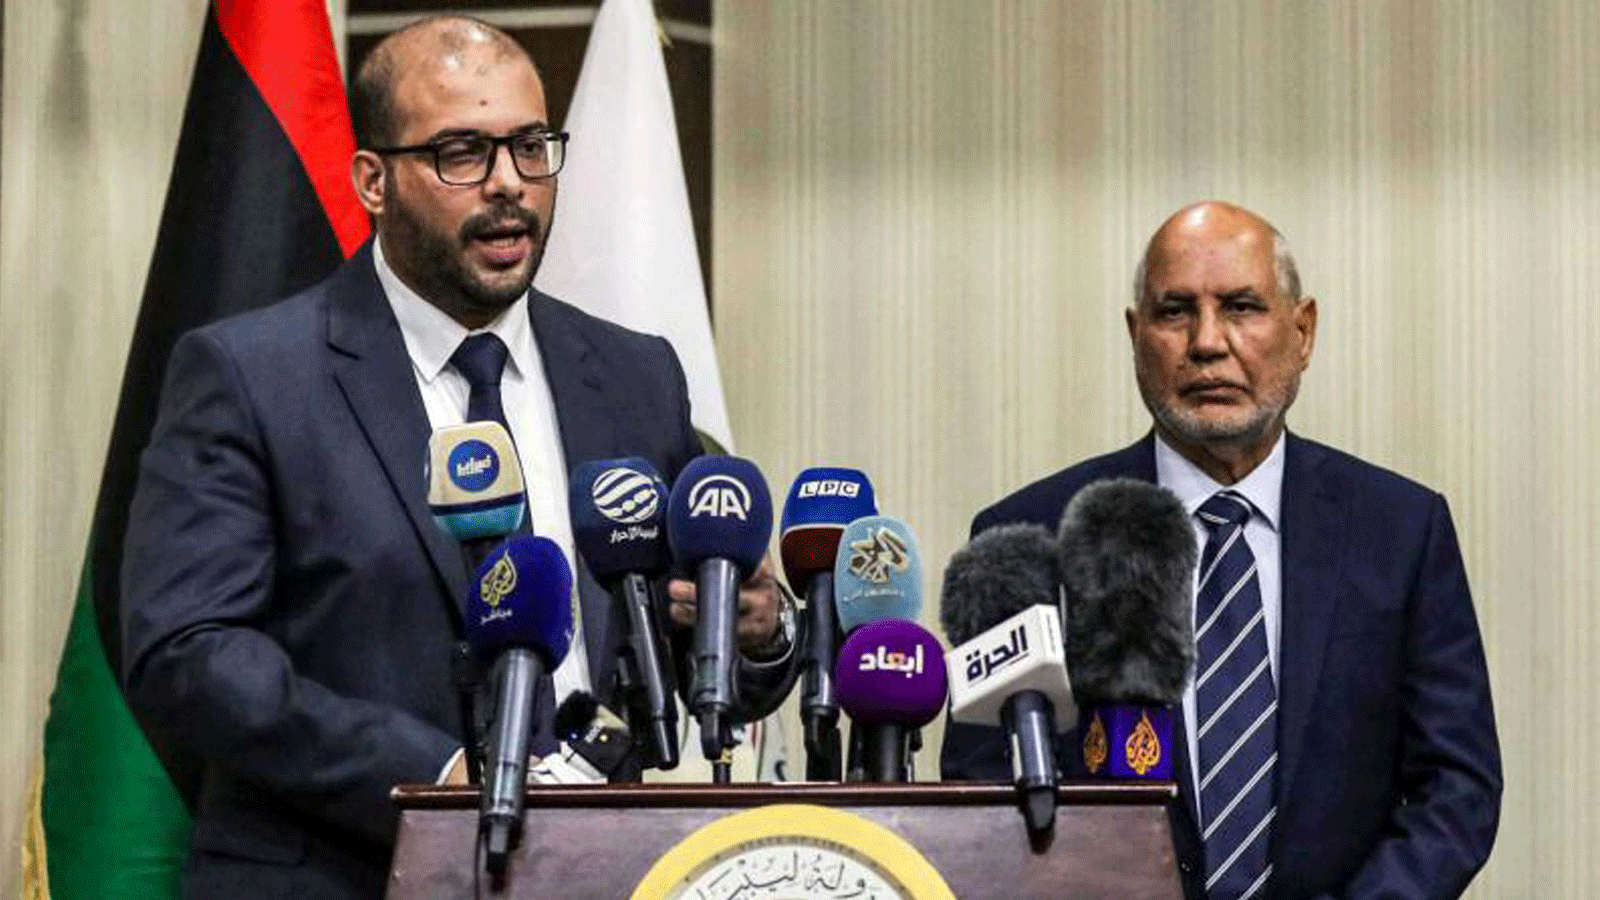 عمر بوشاح (إلى اليسار) نائب رئيس مجلس الدولة الليبي ونائب الرئيس محمد أمزاب (يمين) خلال مؤتمر صحفي حول الانتخابات المقبلة في طرابلس. 8 كانون الأول/ ديسمبر 2021.